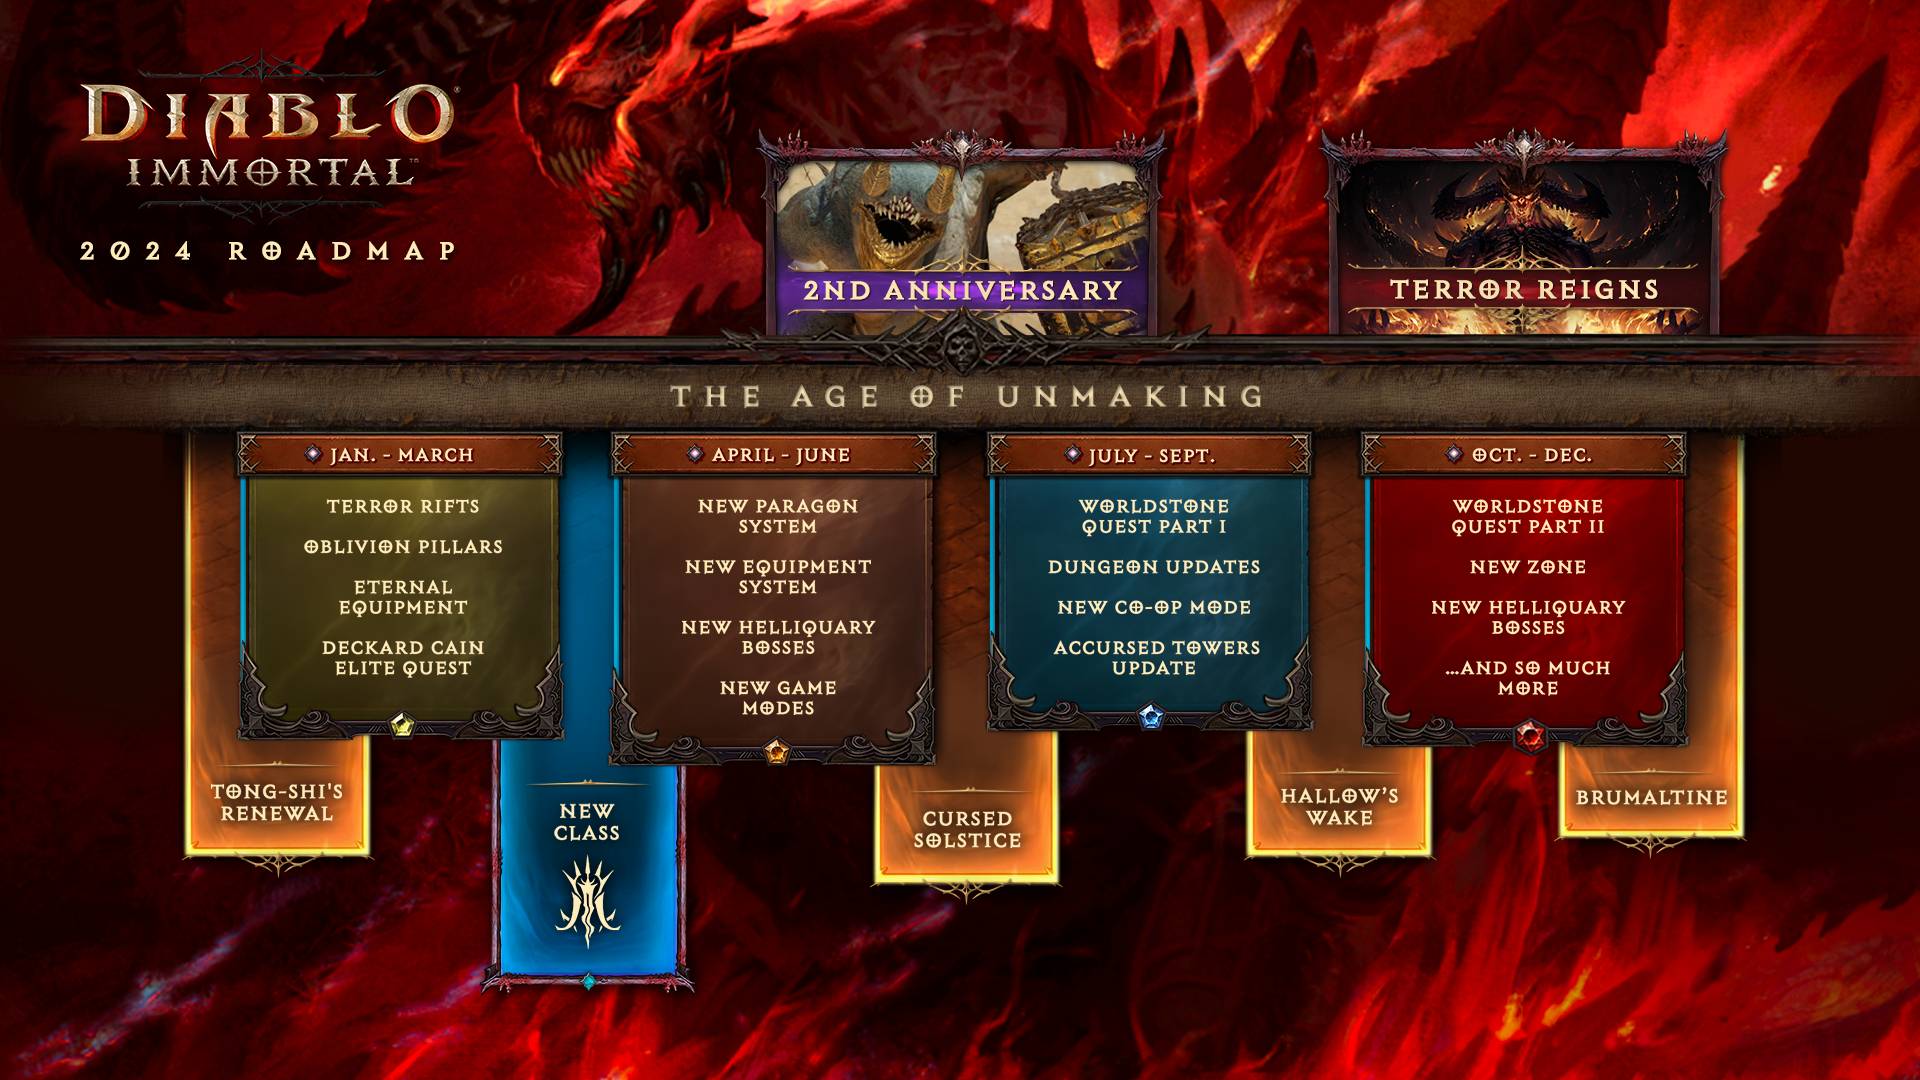 Diablo Immortal 2024 yol haritası infografik.  yıl boyunca çeşitli yeni içerikler gösteriliyor